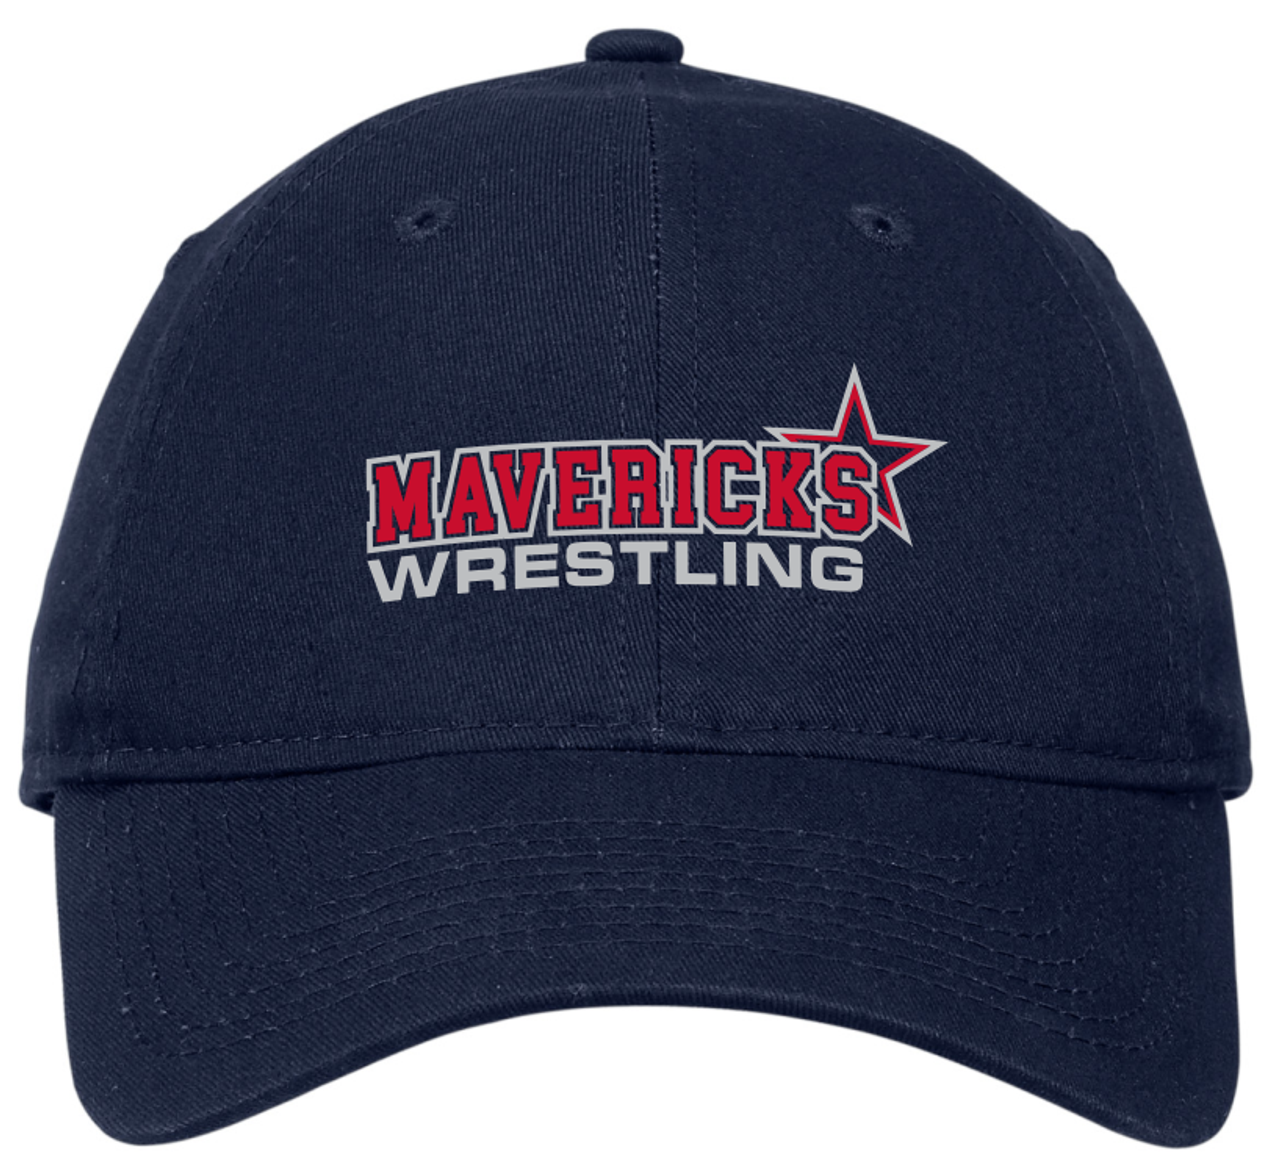 Mavericks Wrestling Adjustable Twill Hat, Navy